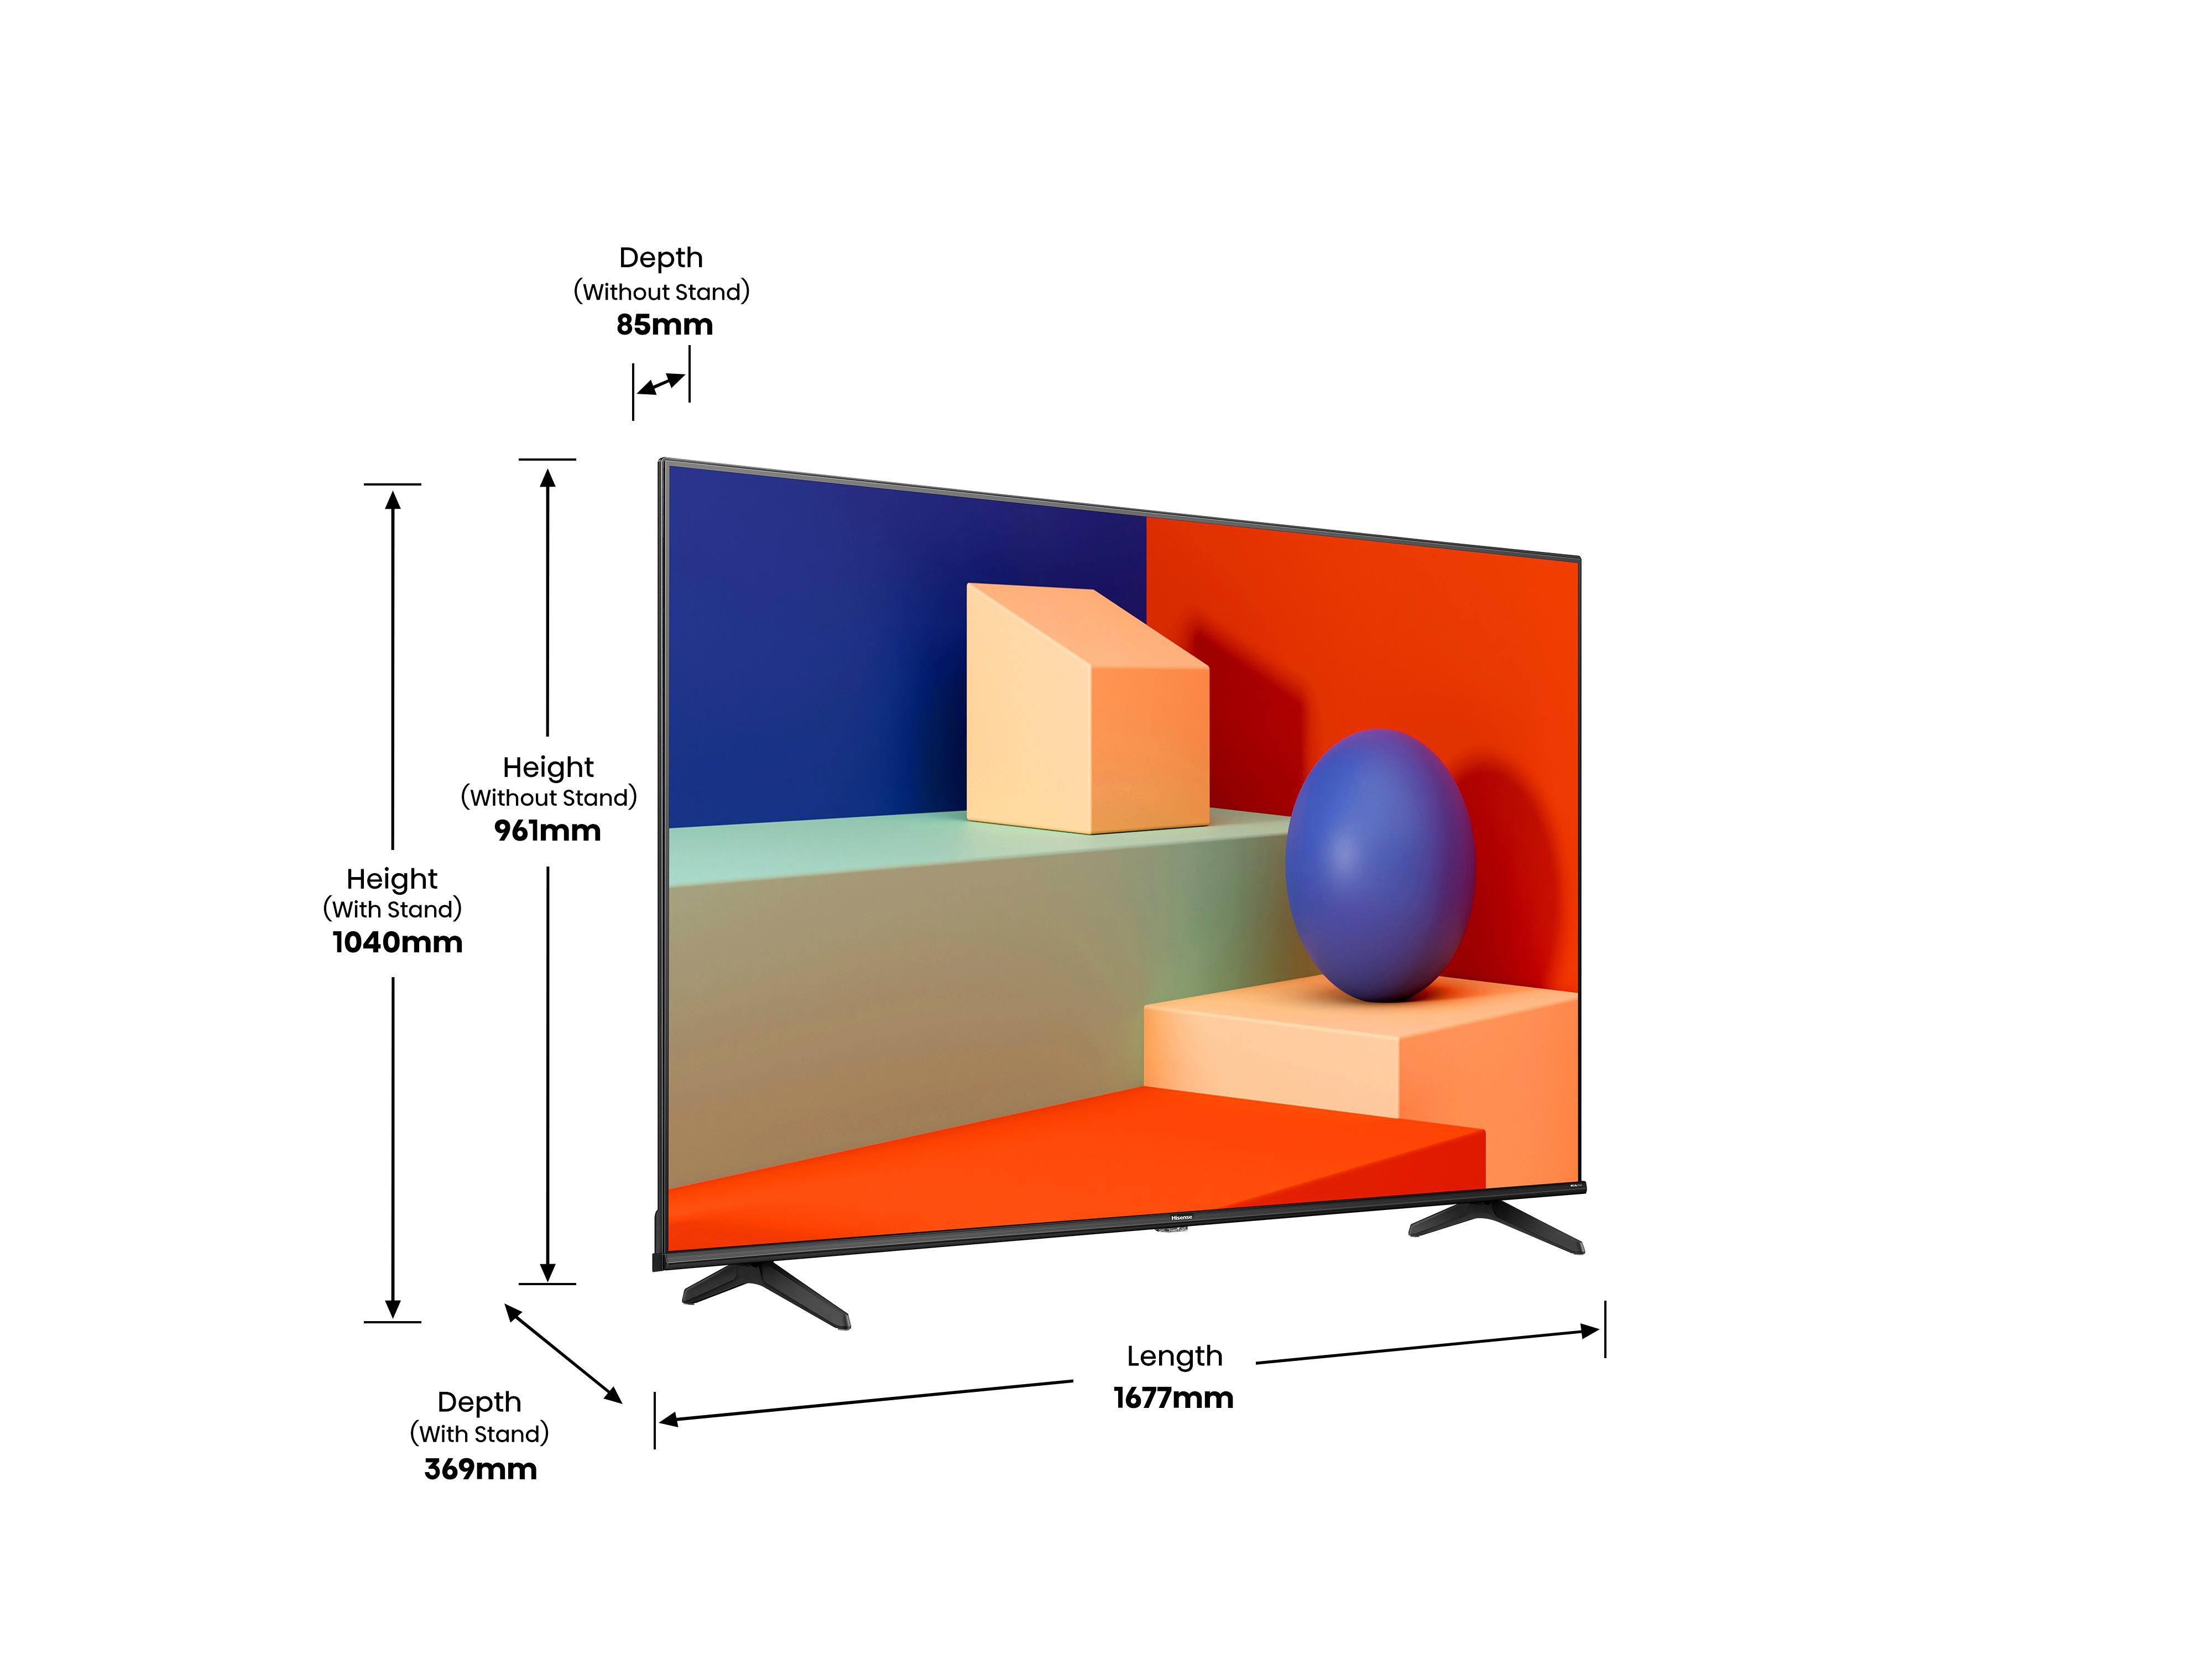 4K, 189 VIDAA) cm, / Zoll HISENSE UHD TV, (Flat, TV LED 75 75A6K SMART